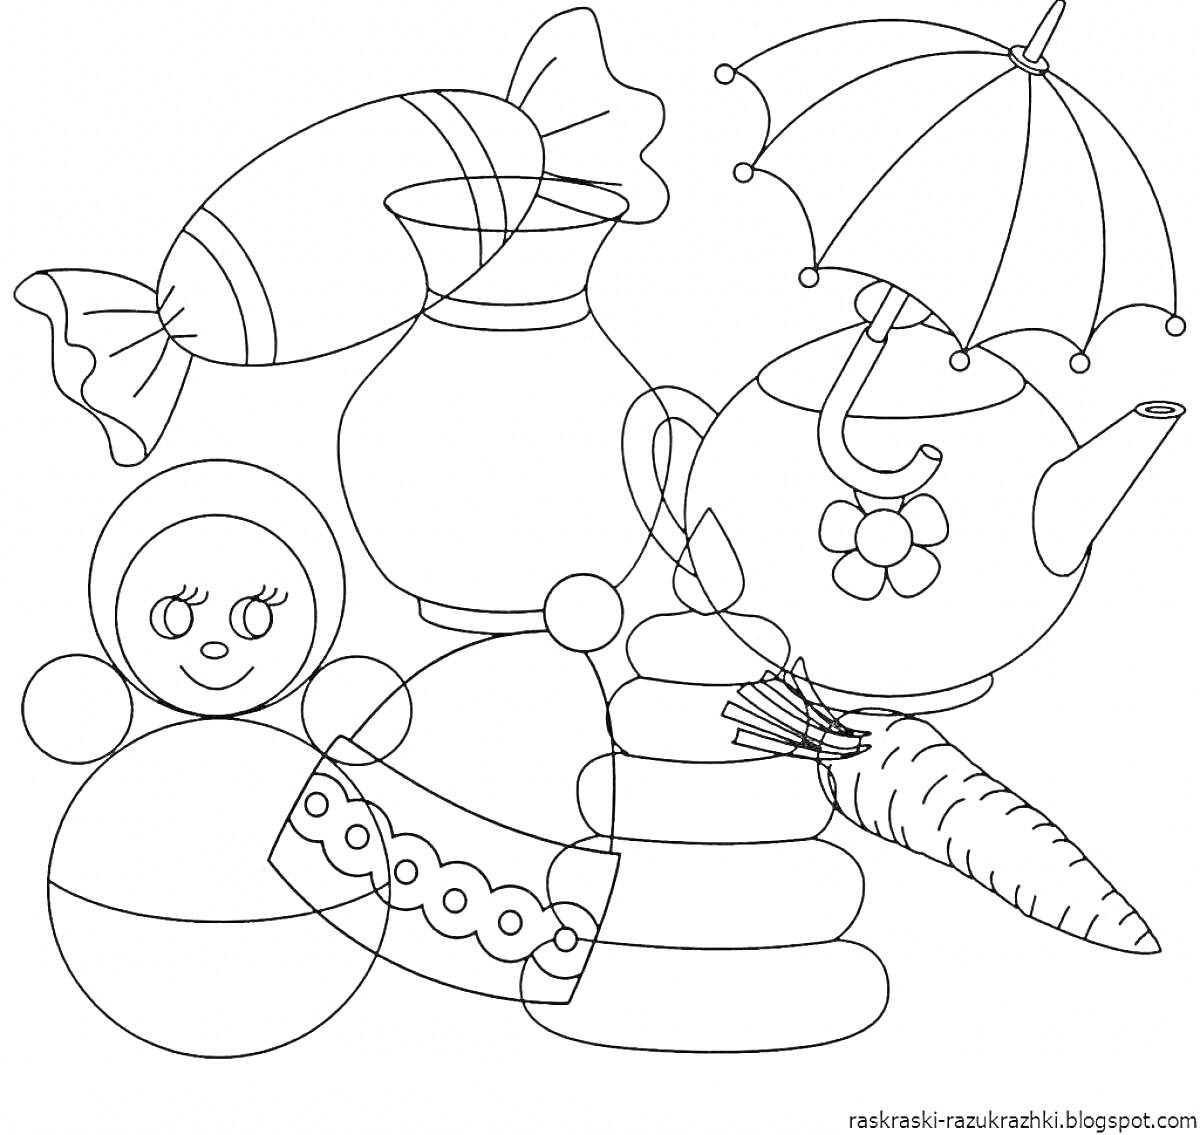 Раскраска Игрушки и предметы: матрешка, кувшин, конфета, зонтик, чайник, морковь, пирамидка